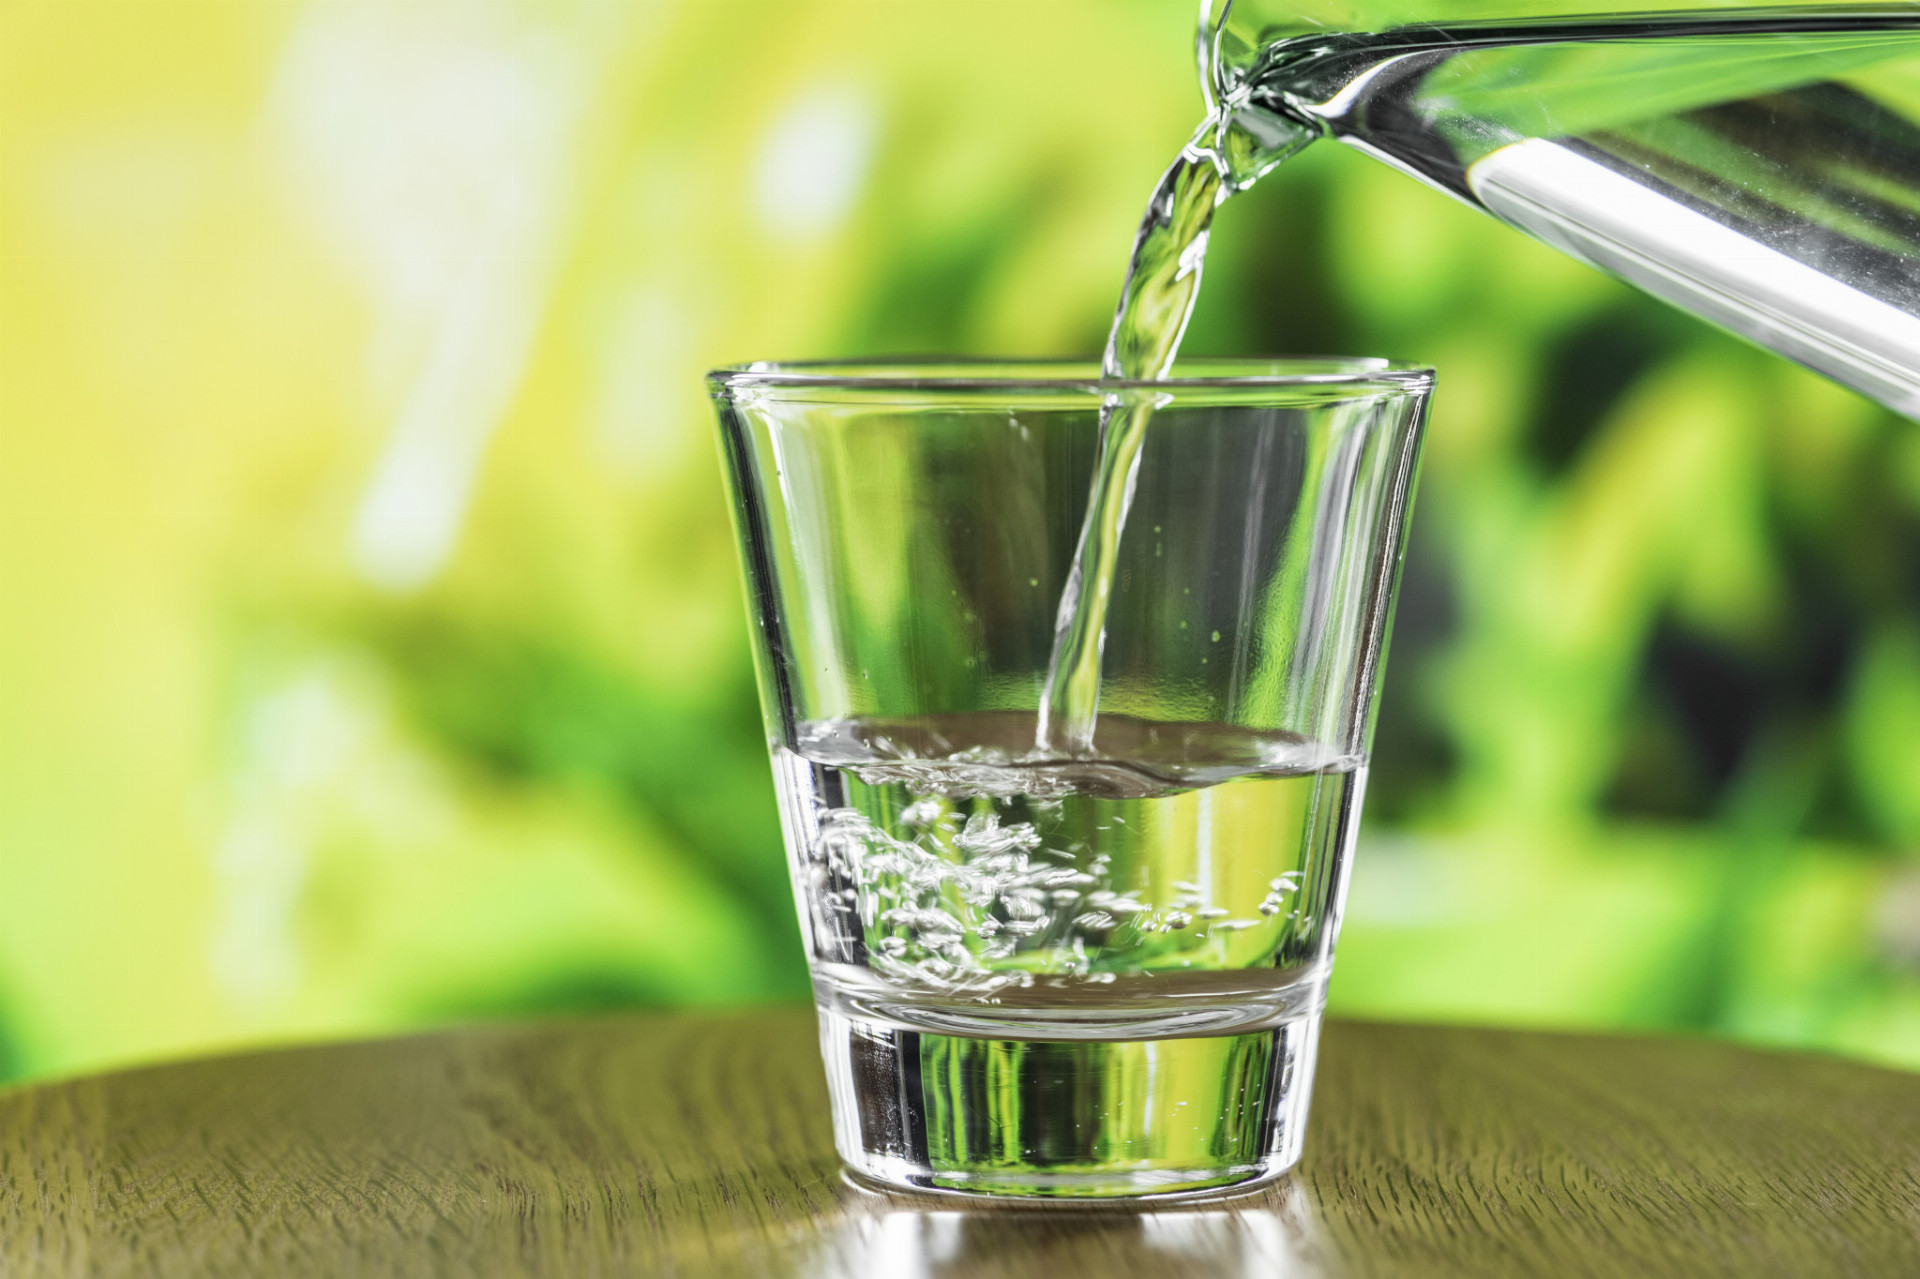 "Keď vaše telo nemá dostatok vody, nemôže tak efektívne cirkulovať krv," hovorí Tucci. Voda tiež drží teplo, čo znamená, že dehydratácia môže nechať vaše telo bez tepelných výhod vody.